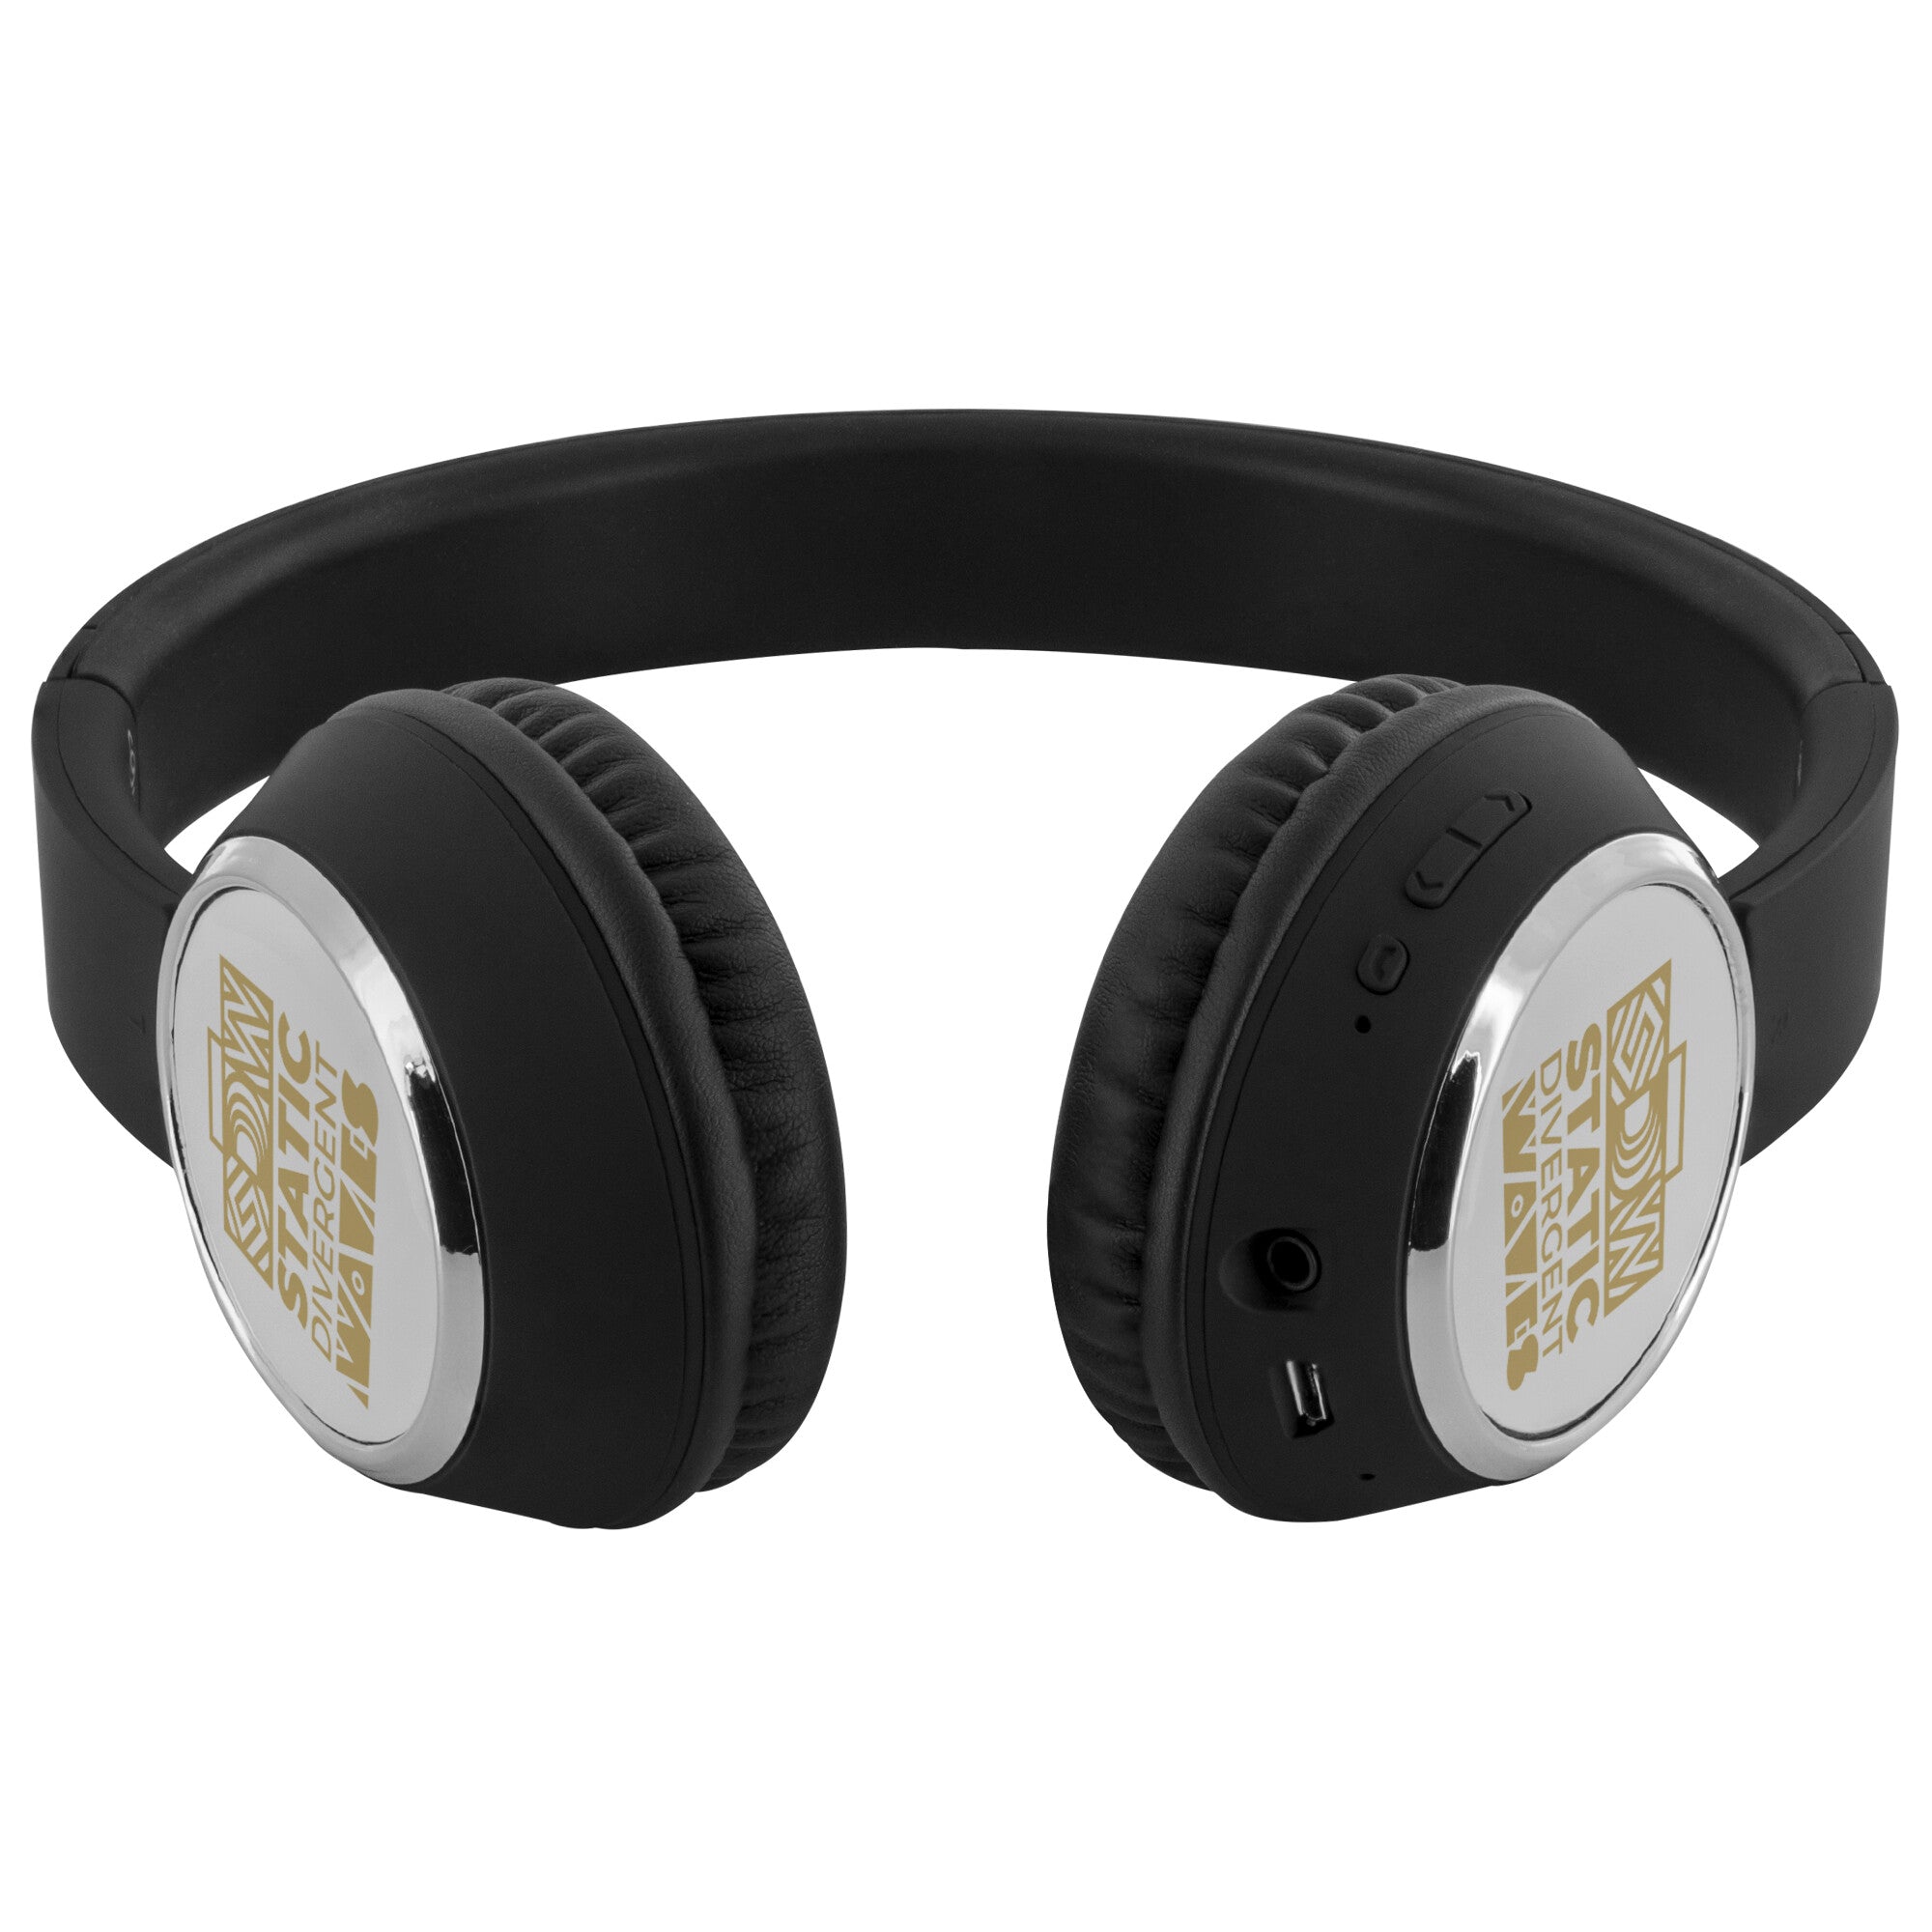 SDW Gold - Bepop Wireless Headphones